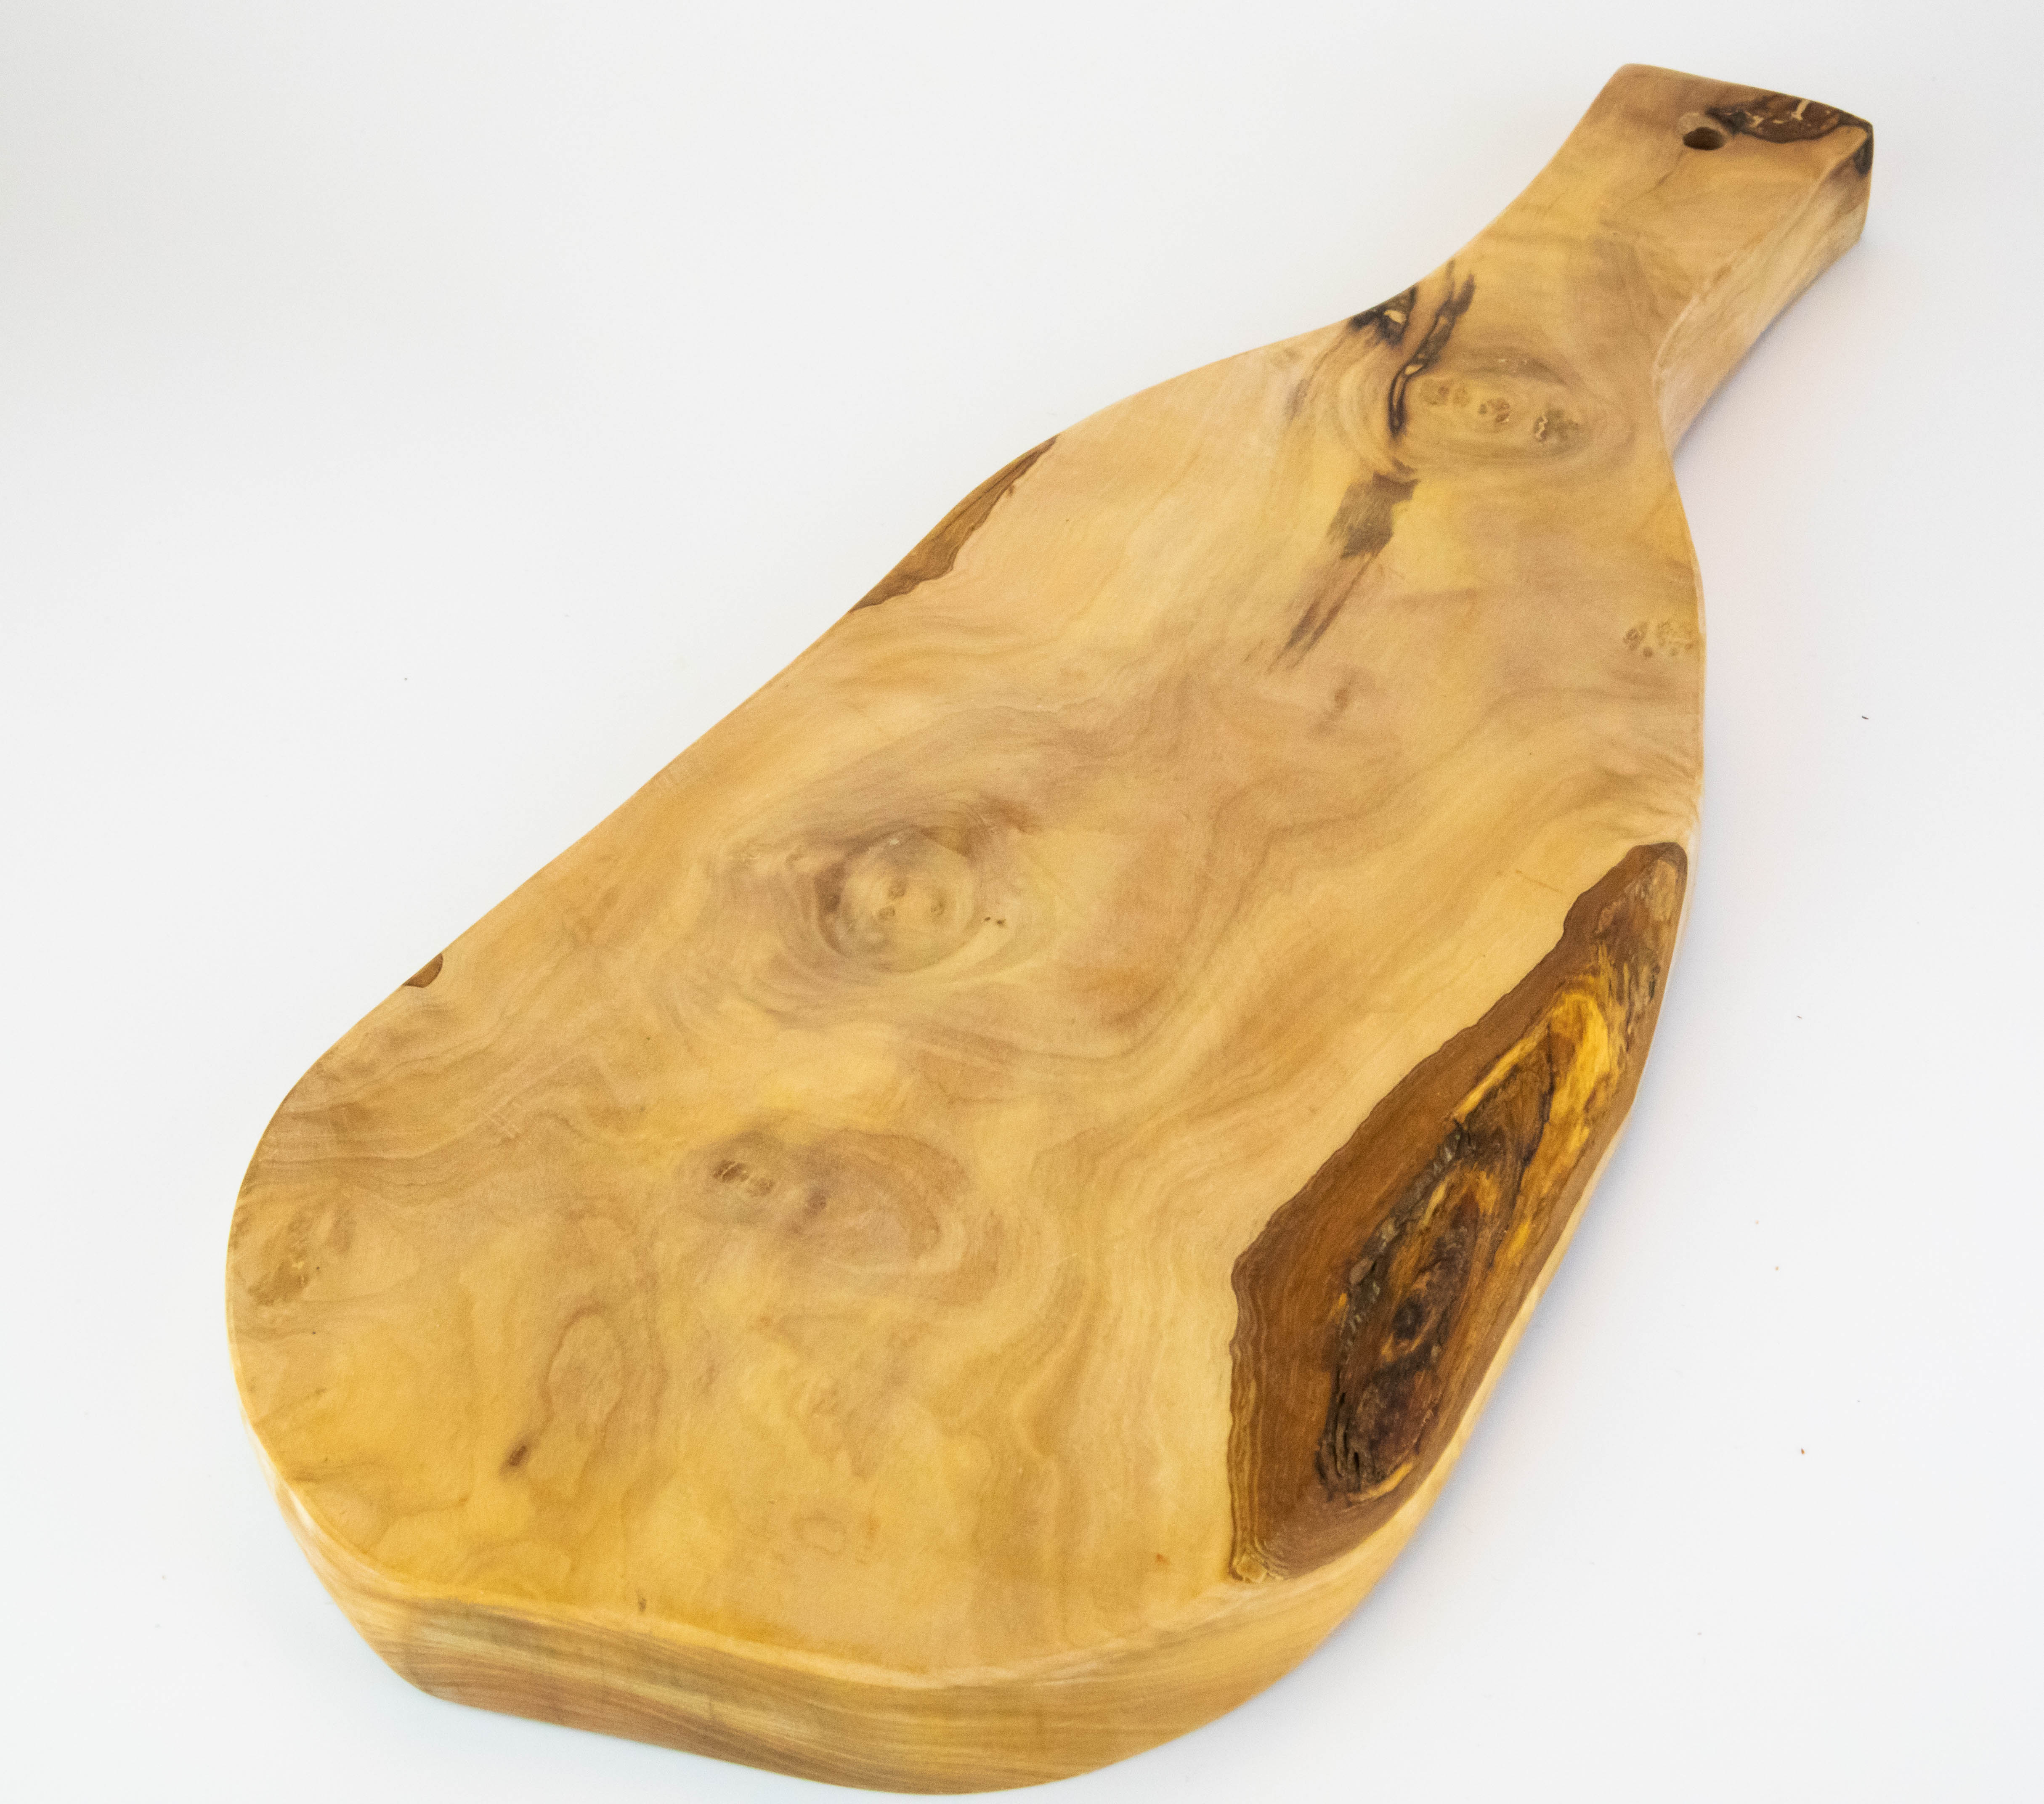 Planche de service rustique avec poignée en bois d'olivier de 50-55 cm